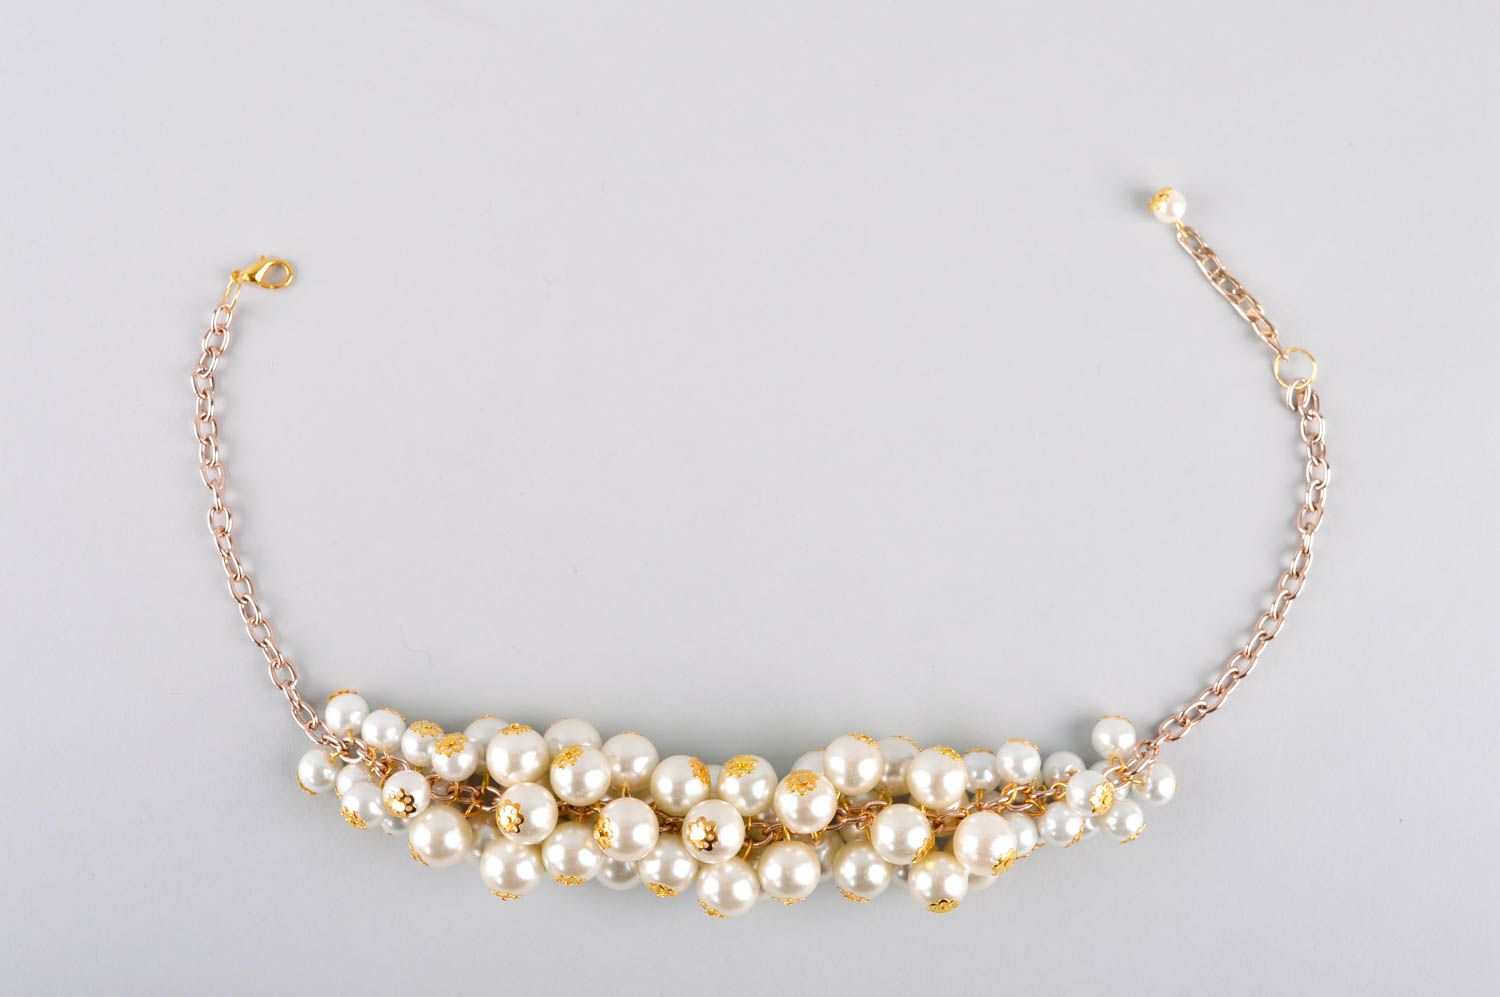 Handmade elegant massive necklace stylish beaded necklace unusual jewelry photo 5